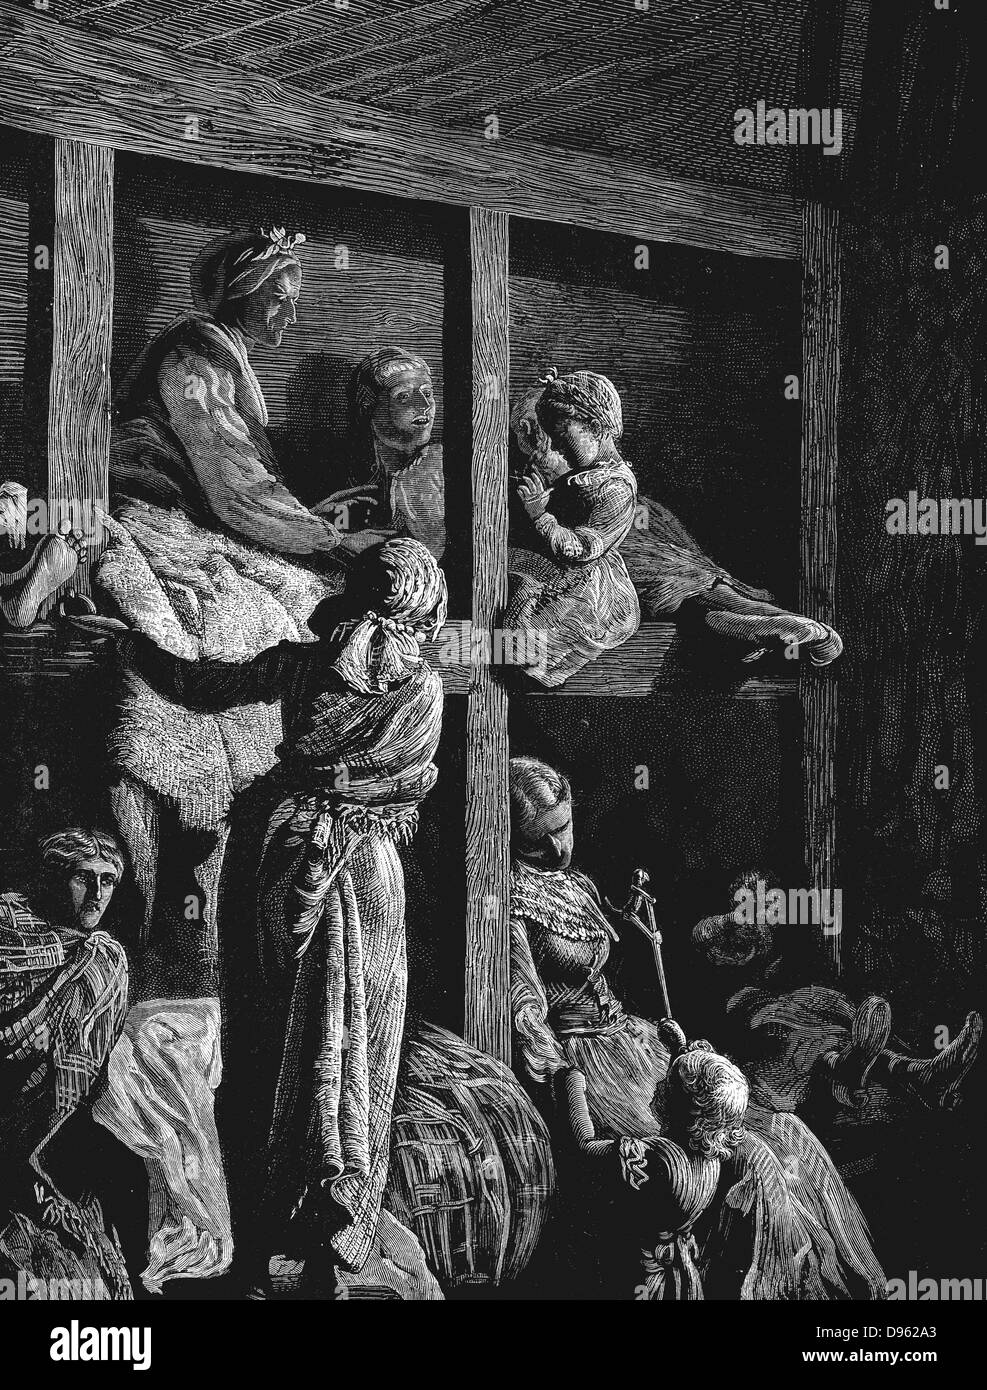 Les émigrants britanniques sur le chemin de l'Amérique en tant que passagers de l'entrepont. À partir de 'l'Illustration', Londres, mars 1870. La gravure sur bois Banque D'Images